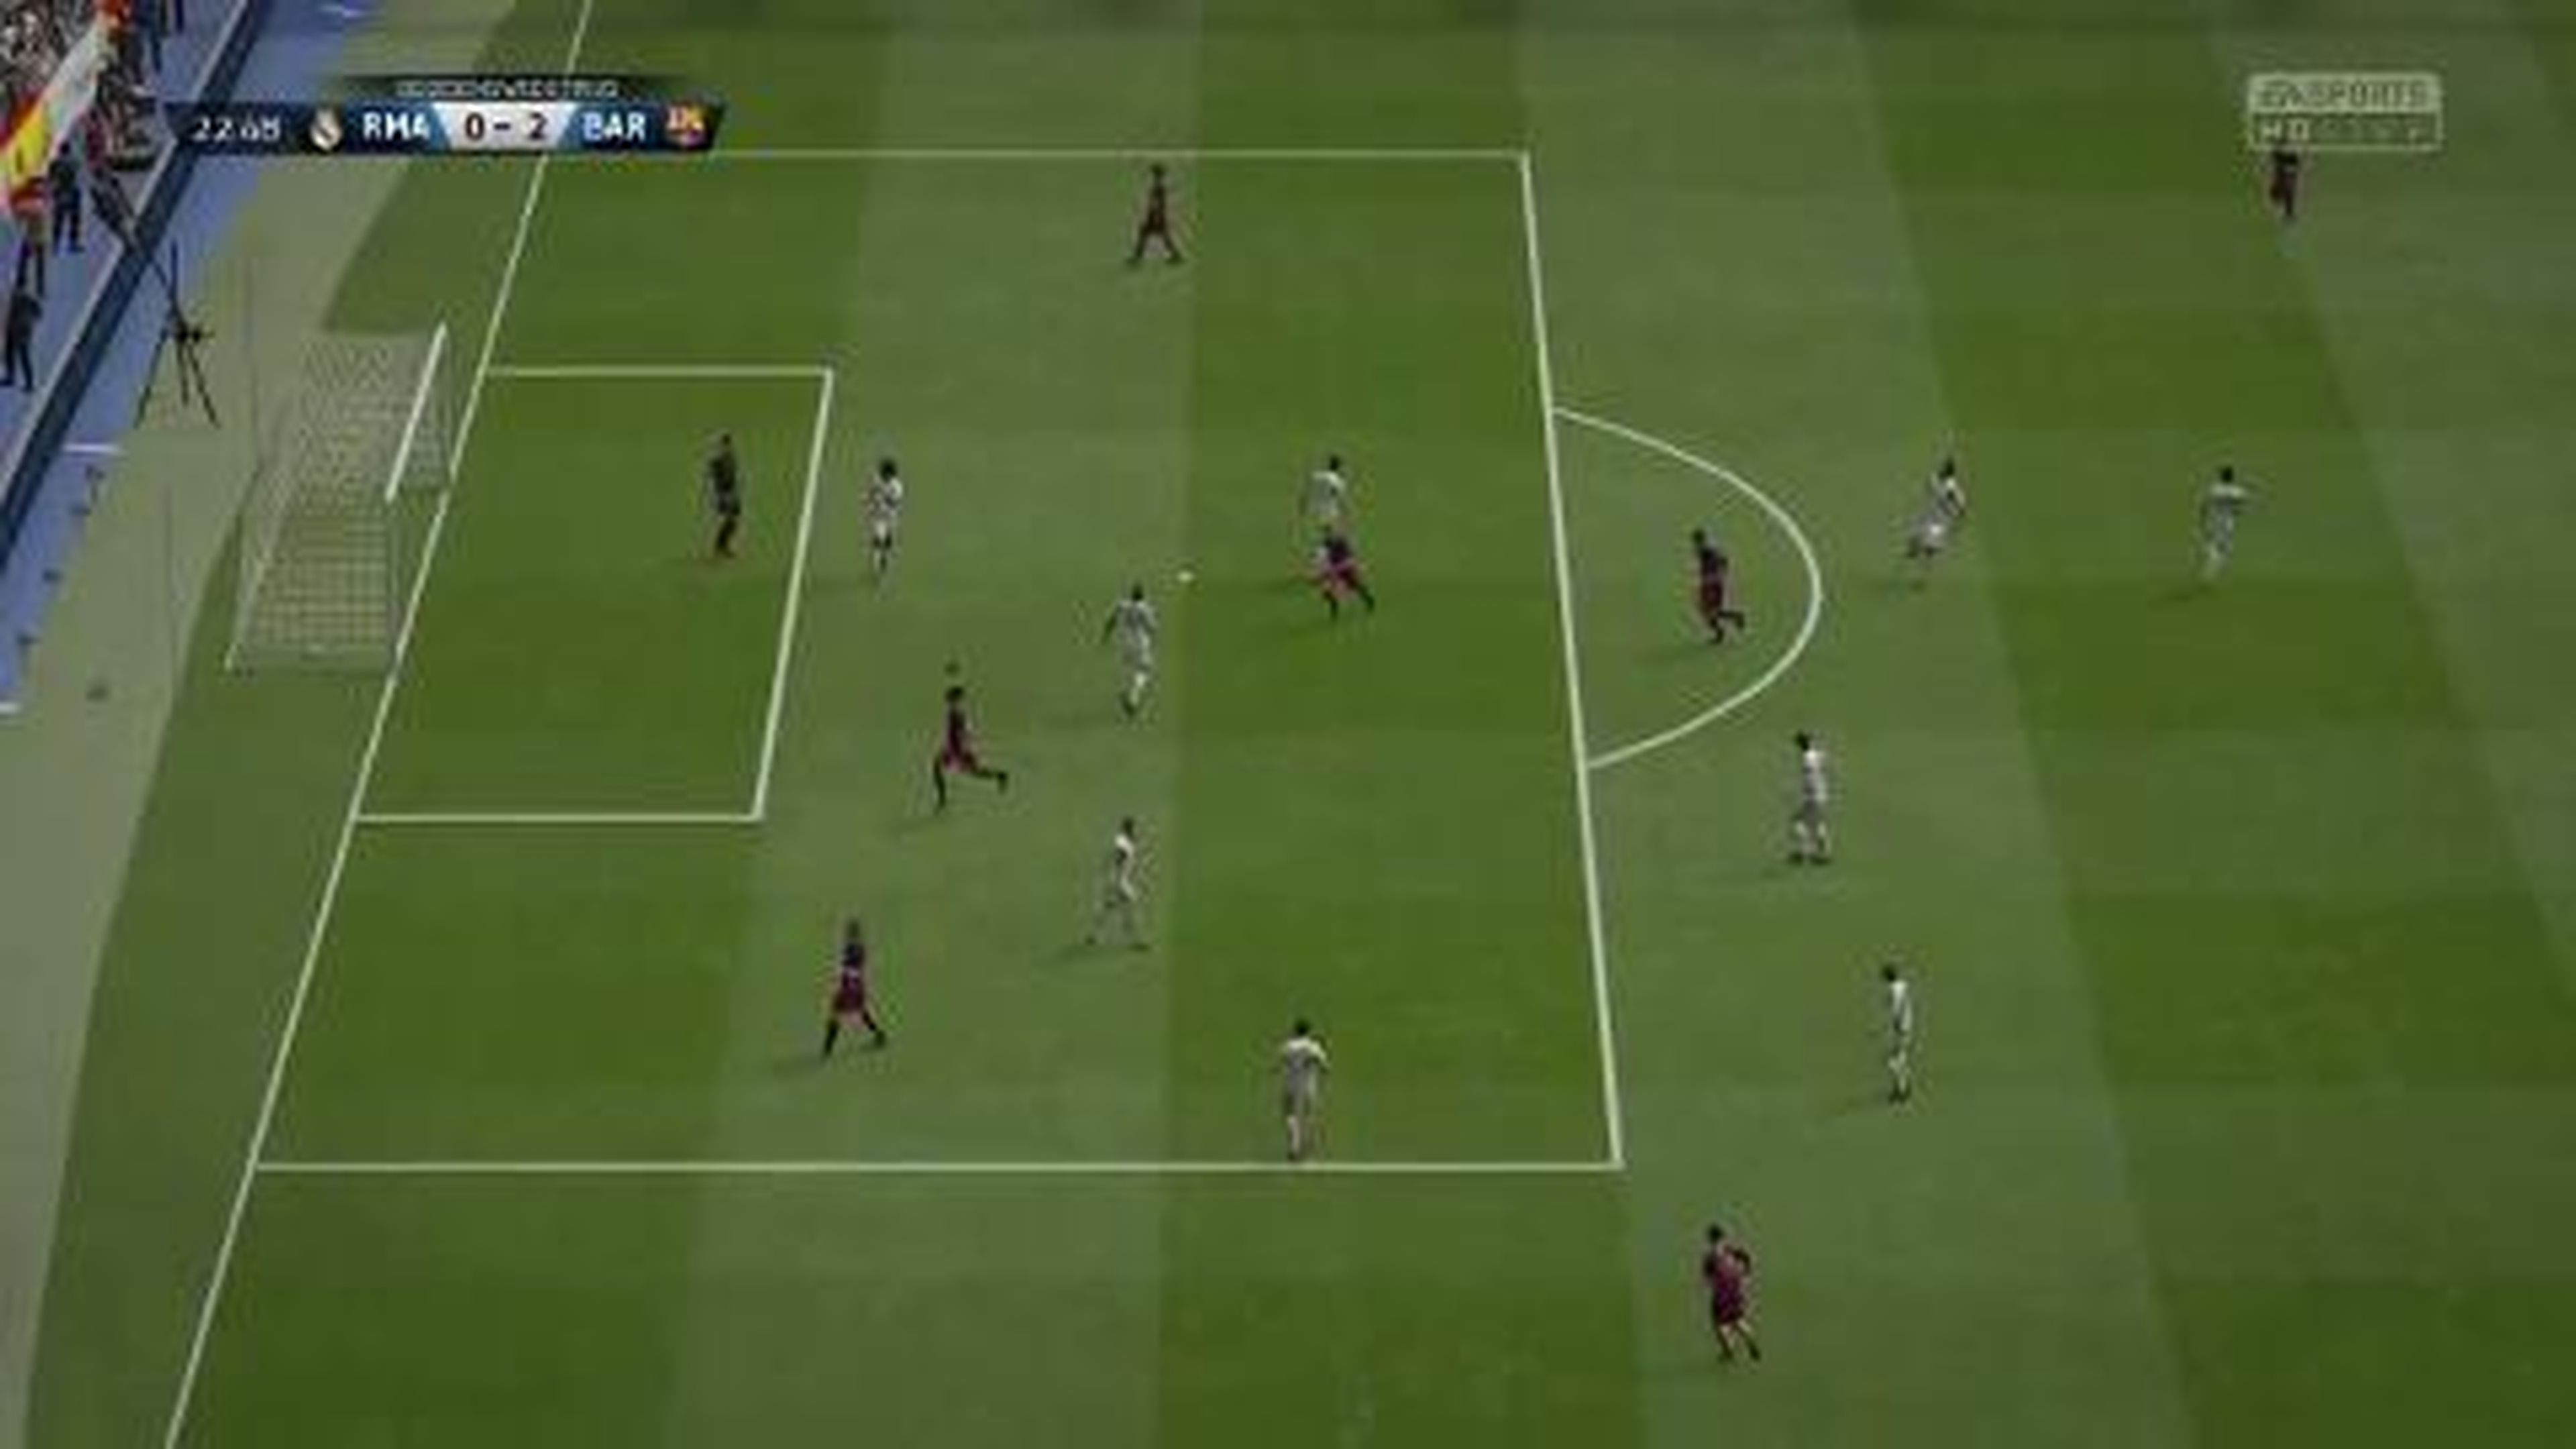 FIFA 16 Best Goals of the Week - Round 6